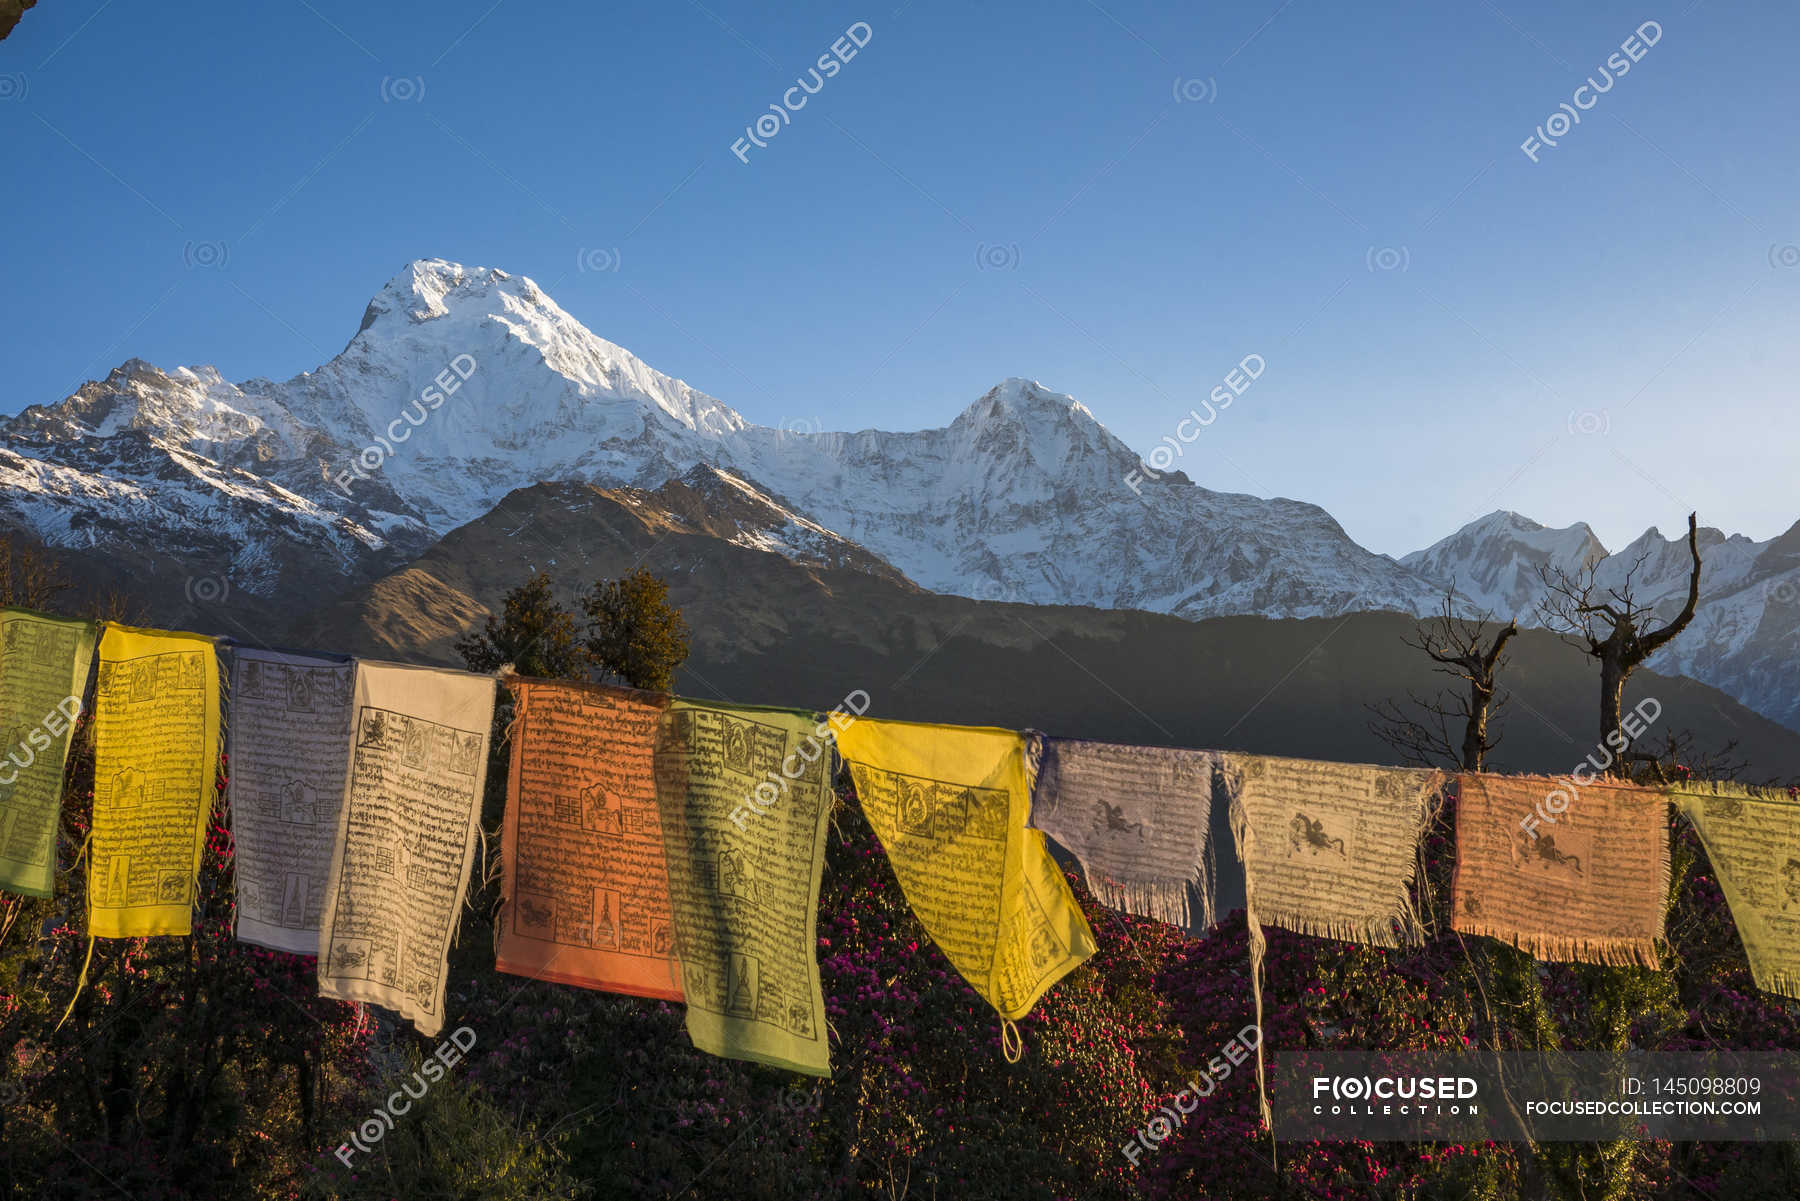 Bandiere di preghiera tibetane — copia spazio, appeso - Stock Photo